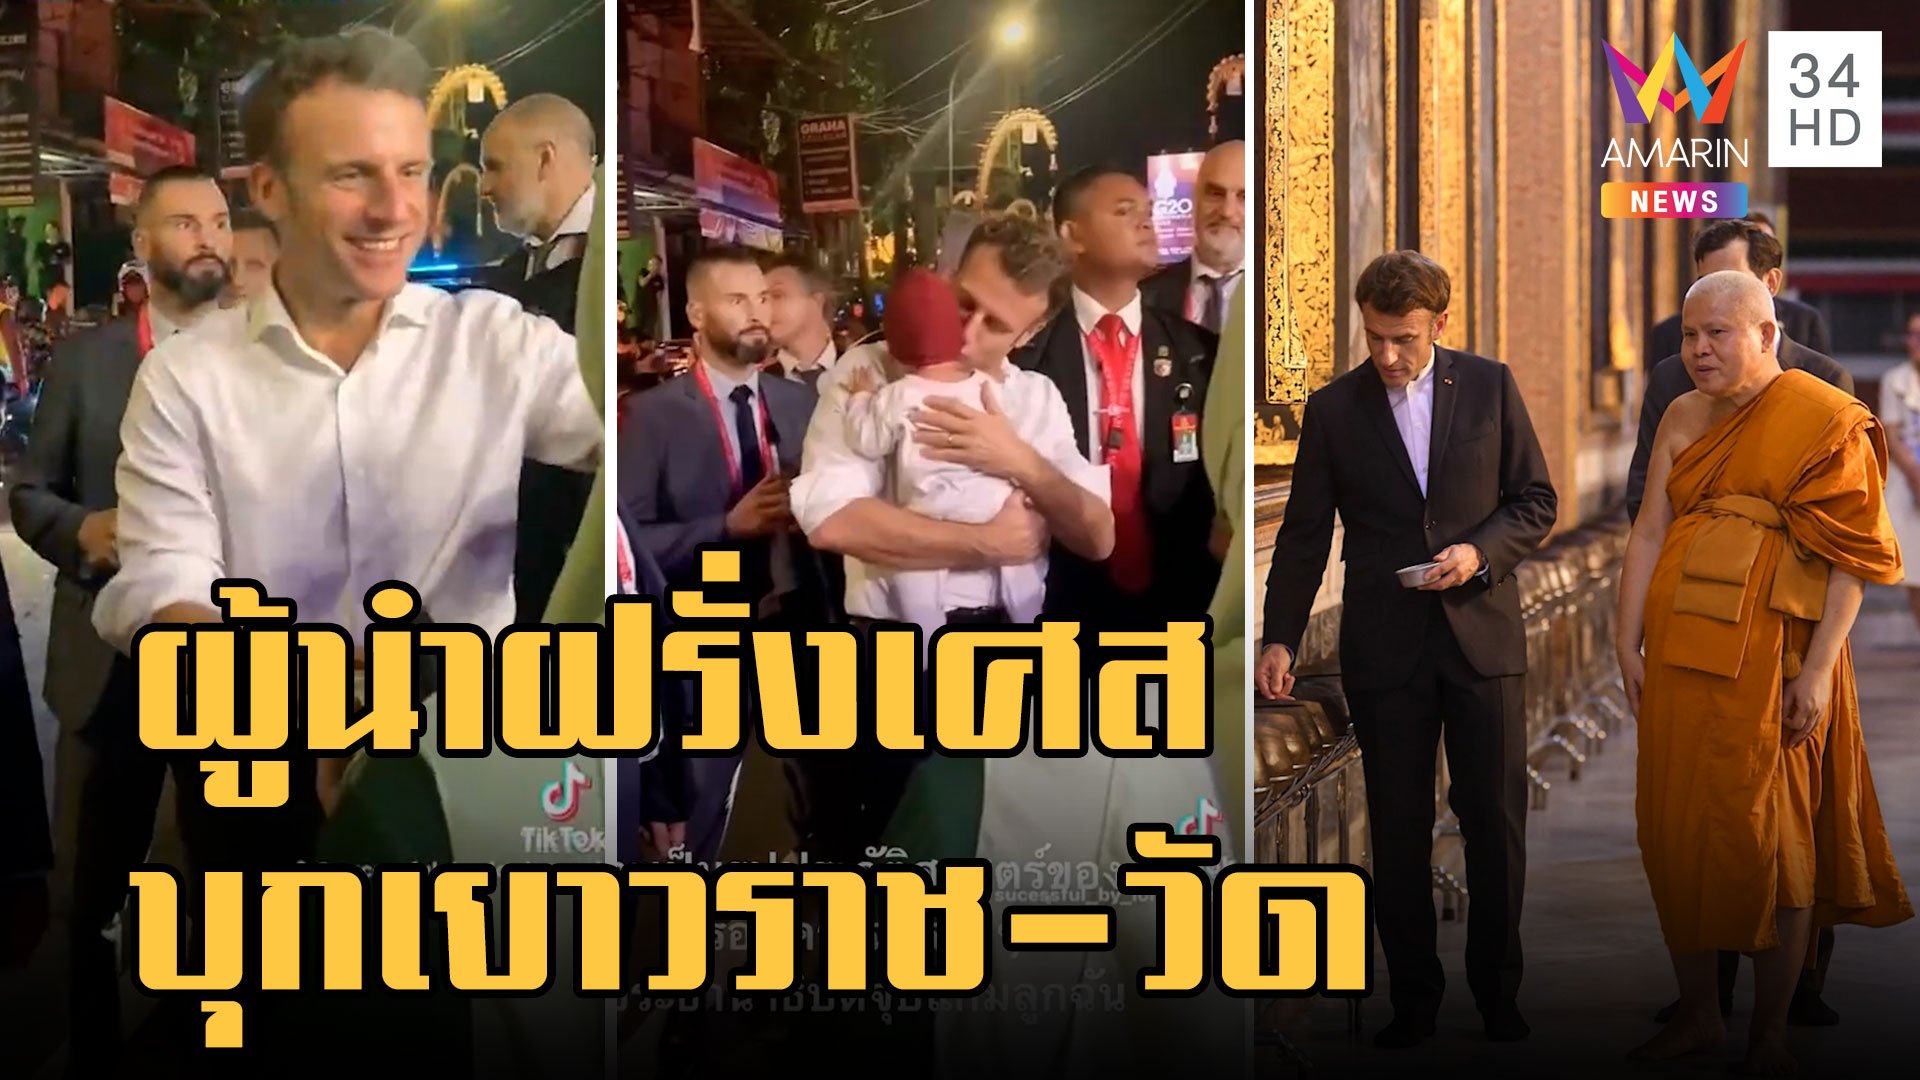 "มาครง" ผู้นำฝรั่งเศสบุกเยาวราช สัมผัสสตรีทฟู้ดเมืองไทย | ข่าวอรุณอมรินทร์ | 20 พ.ย. 65 | AMARIN TVHD34